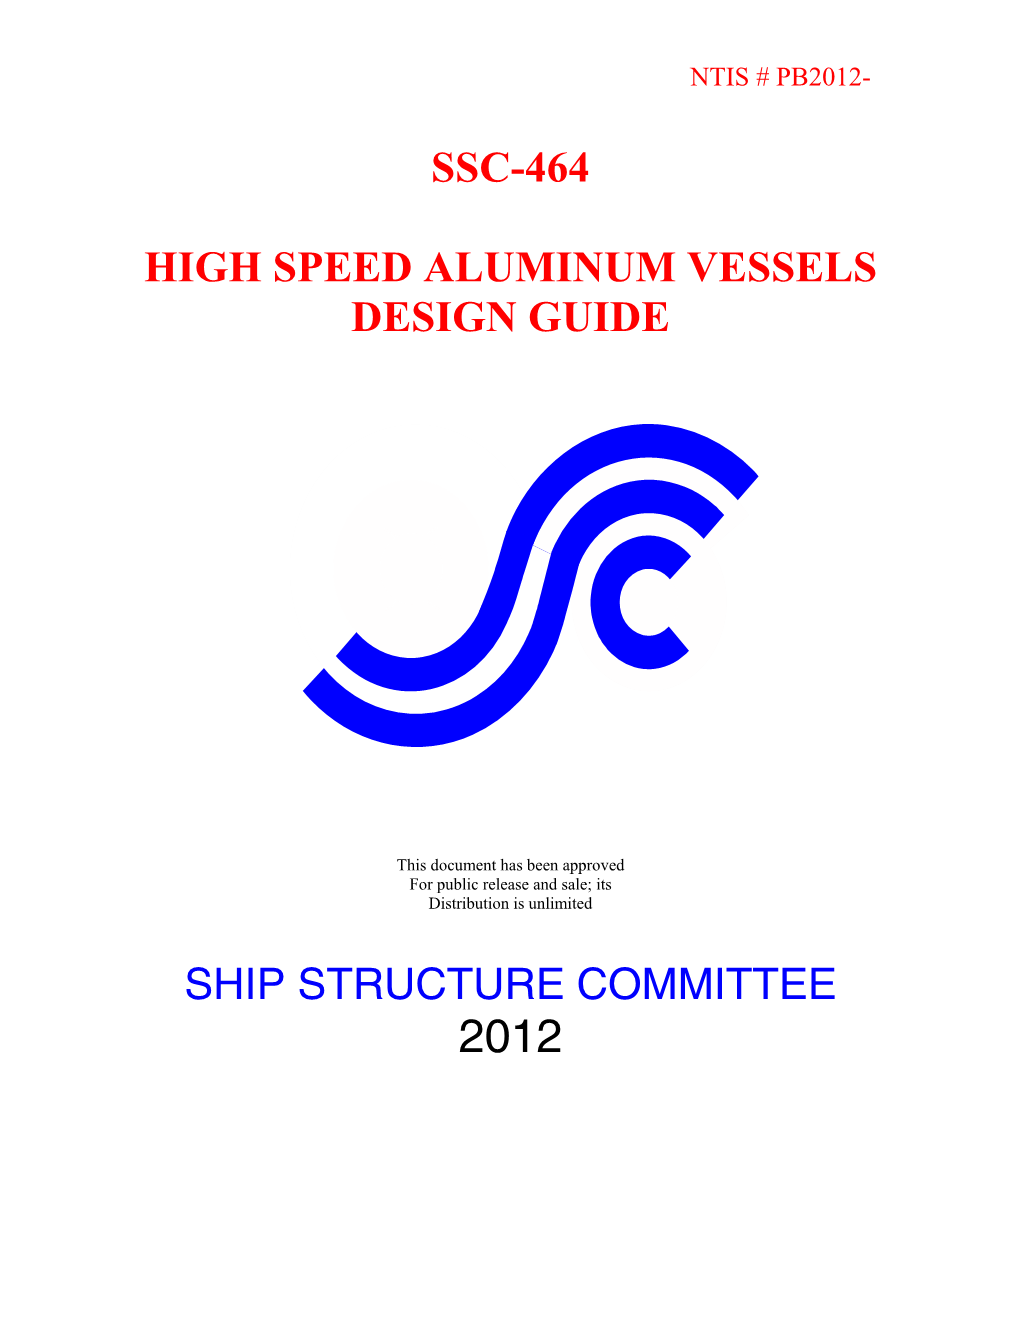 Ssc-464 High Speed Aluminum Vessels Design Guide Ship